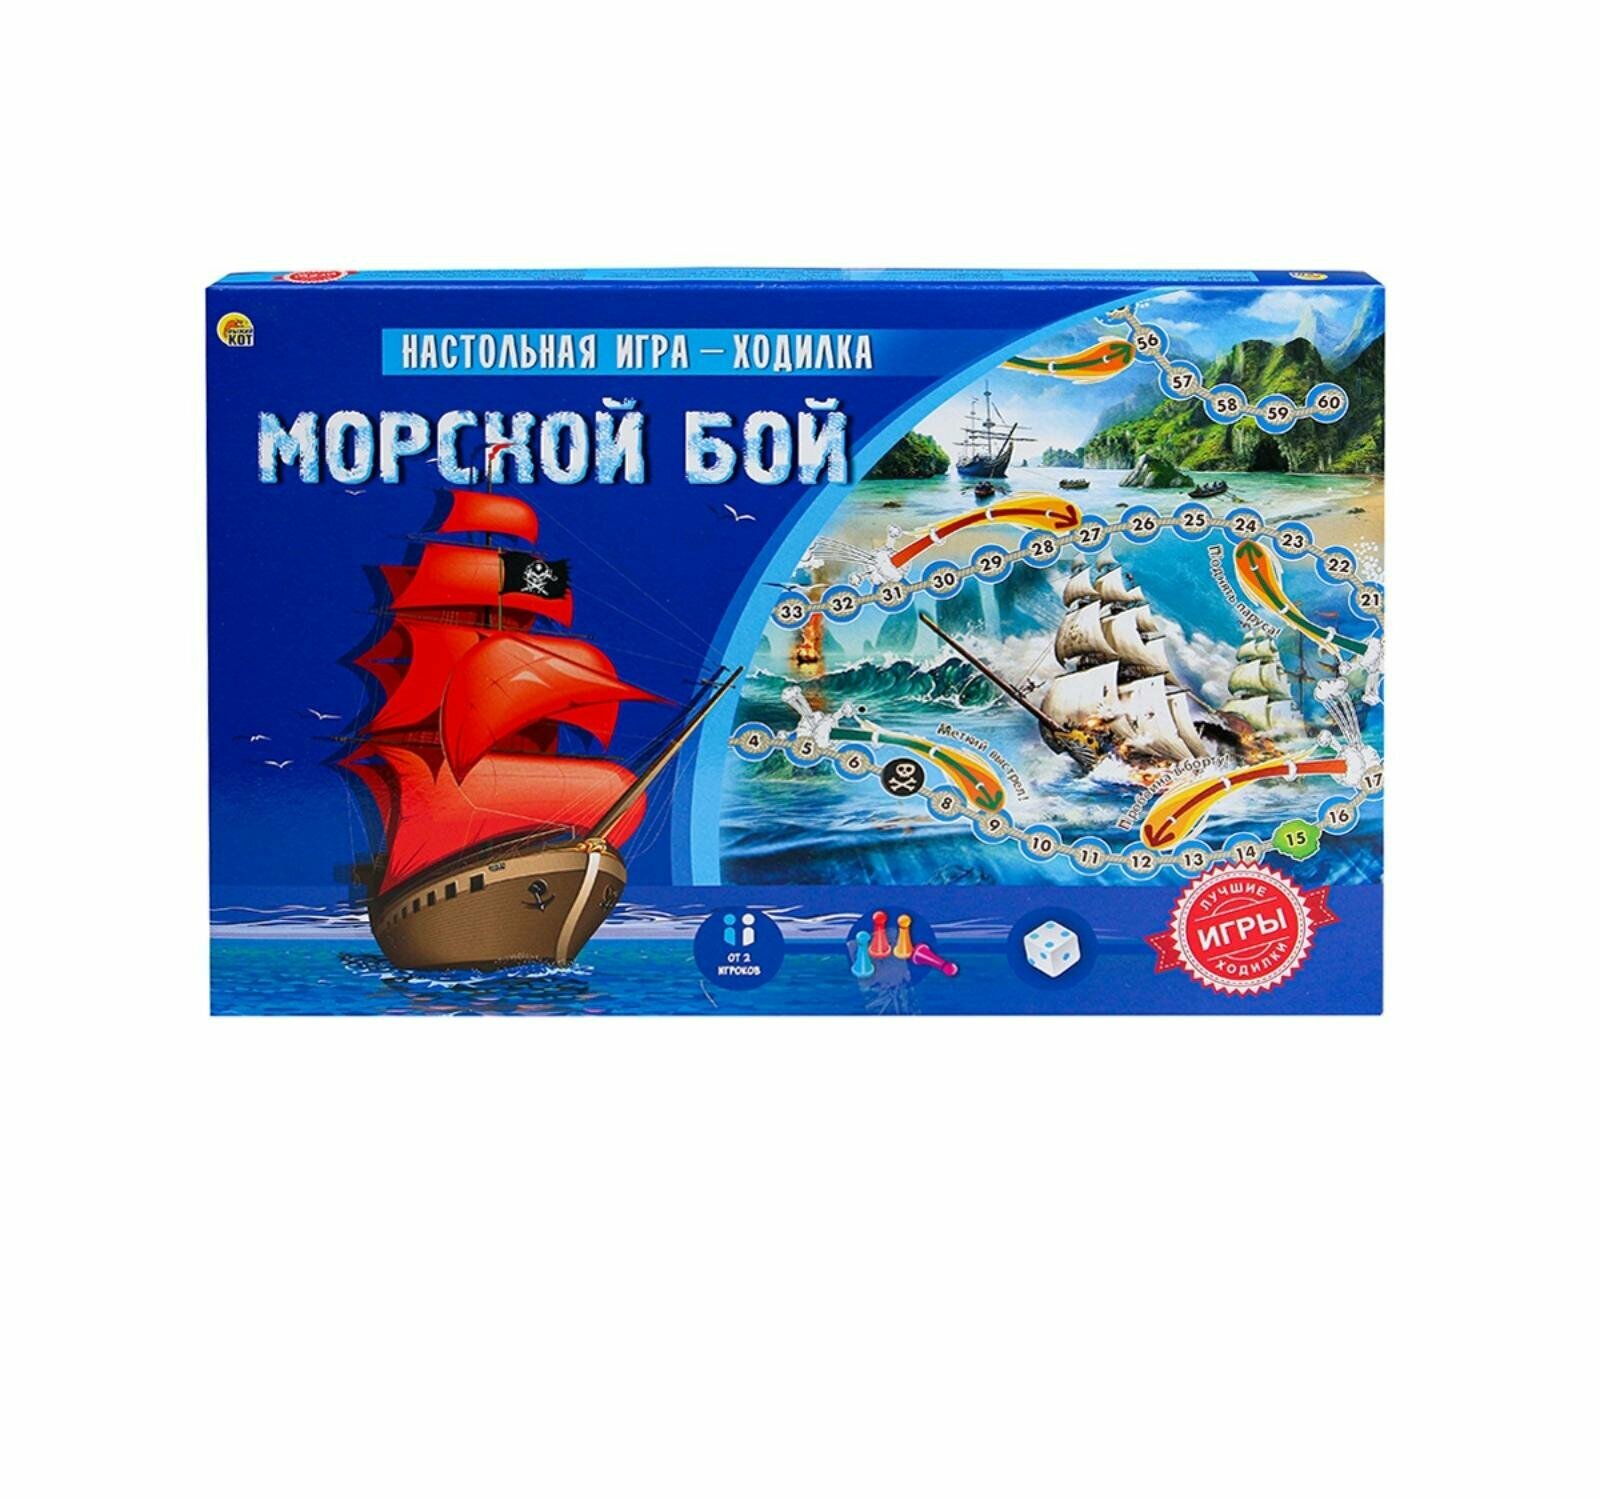 Настольная игра-ходилка "Морской бой" (ИН-8971) - фото №8